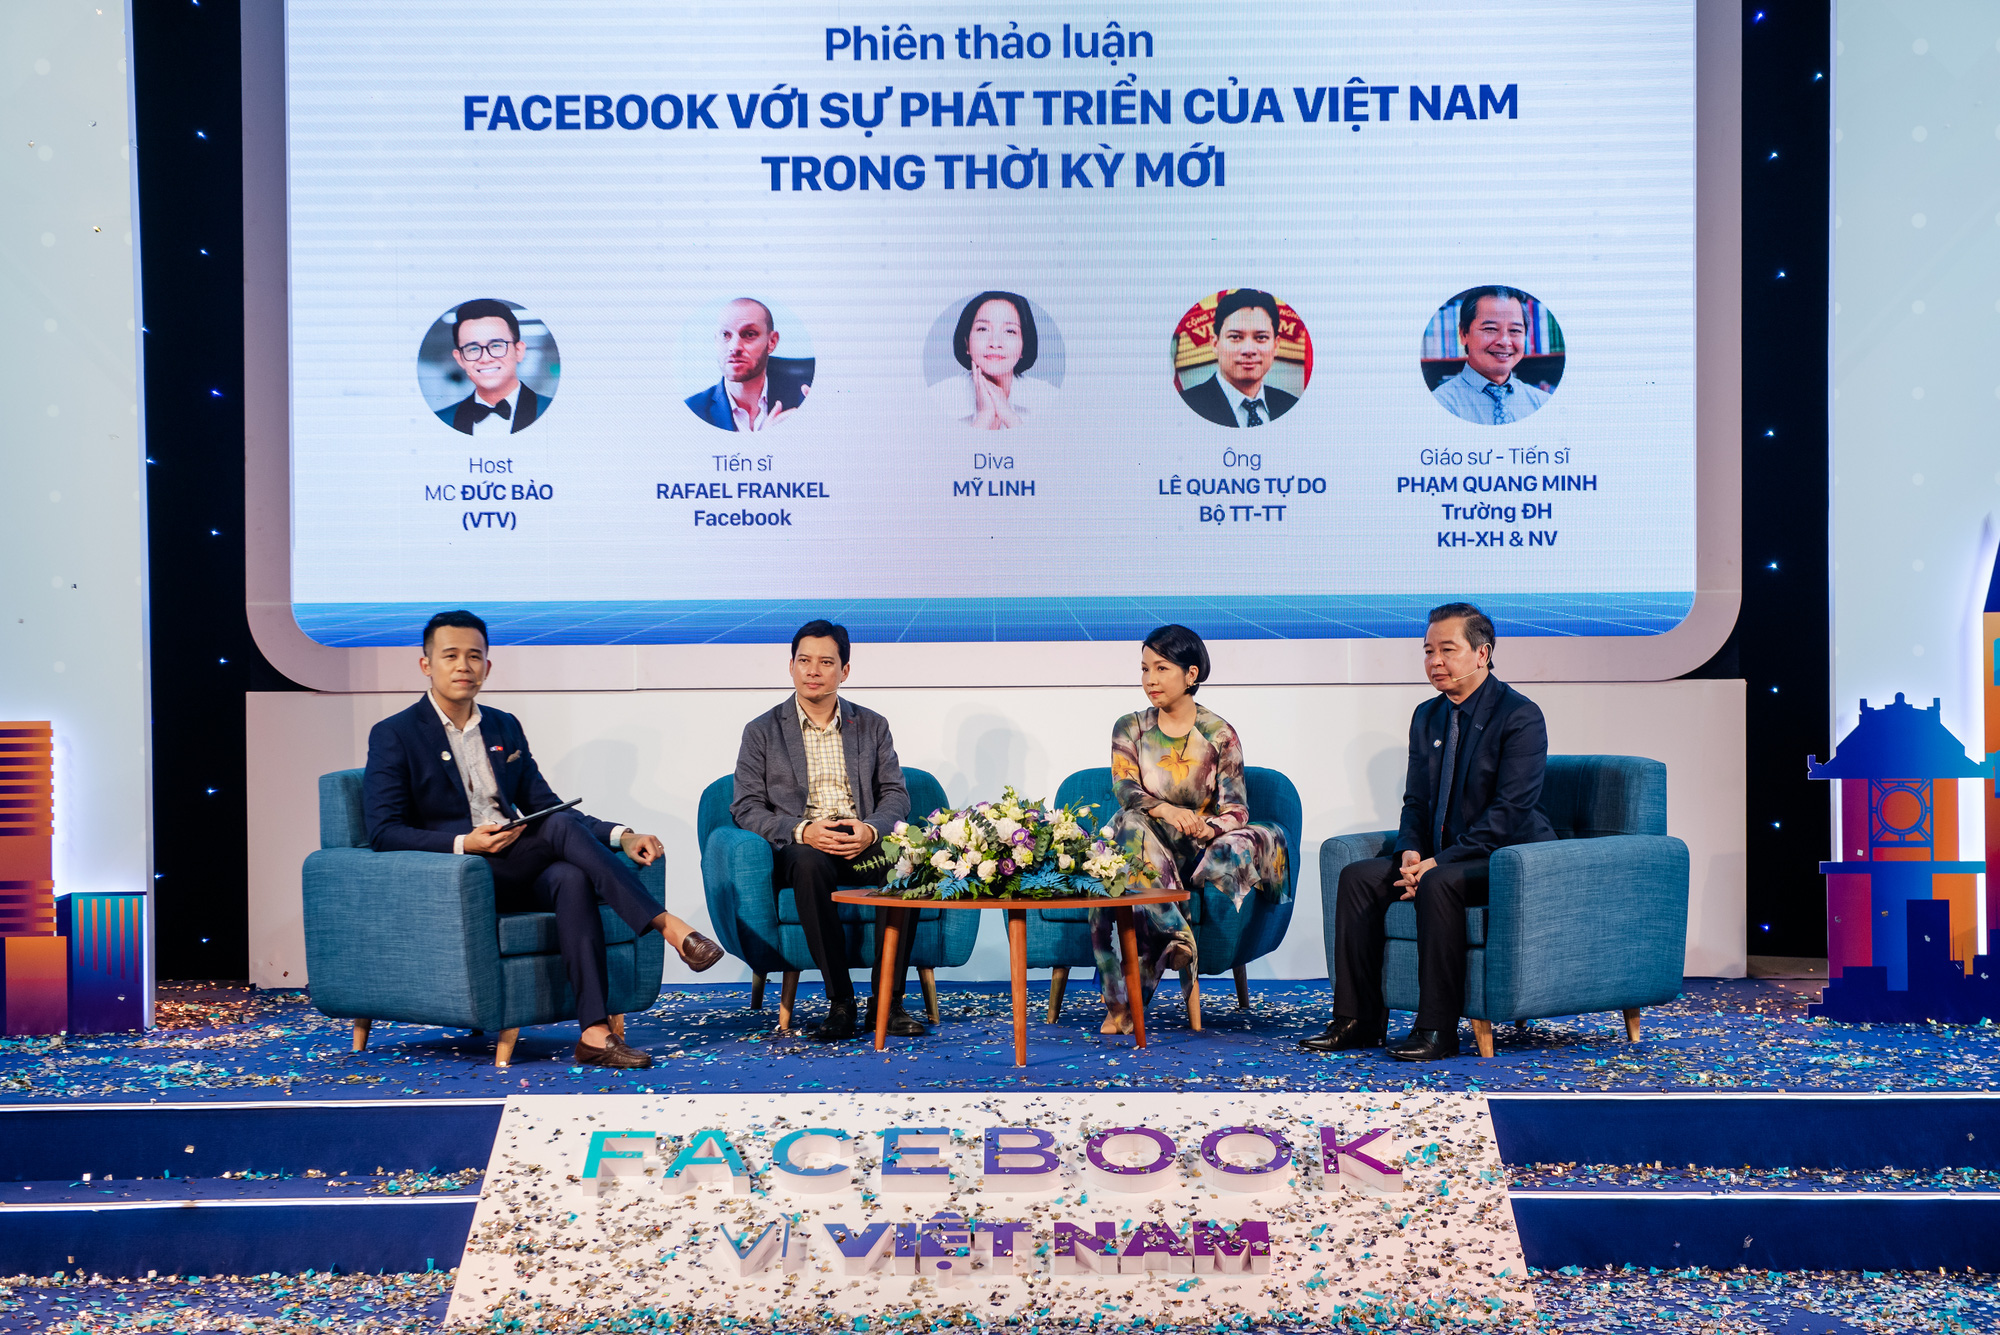 Facebook vì Việt Nam: Facebook vì một Việt Nam thịnh vượng - Ảnh 2.